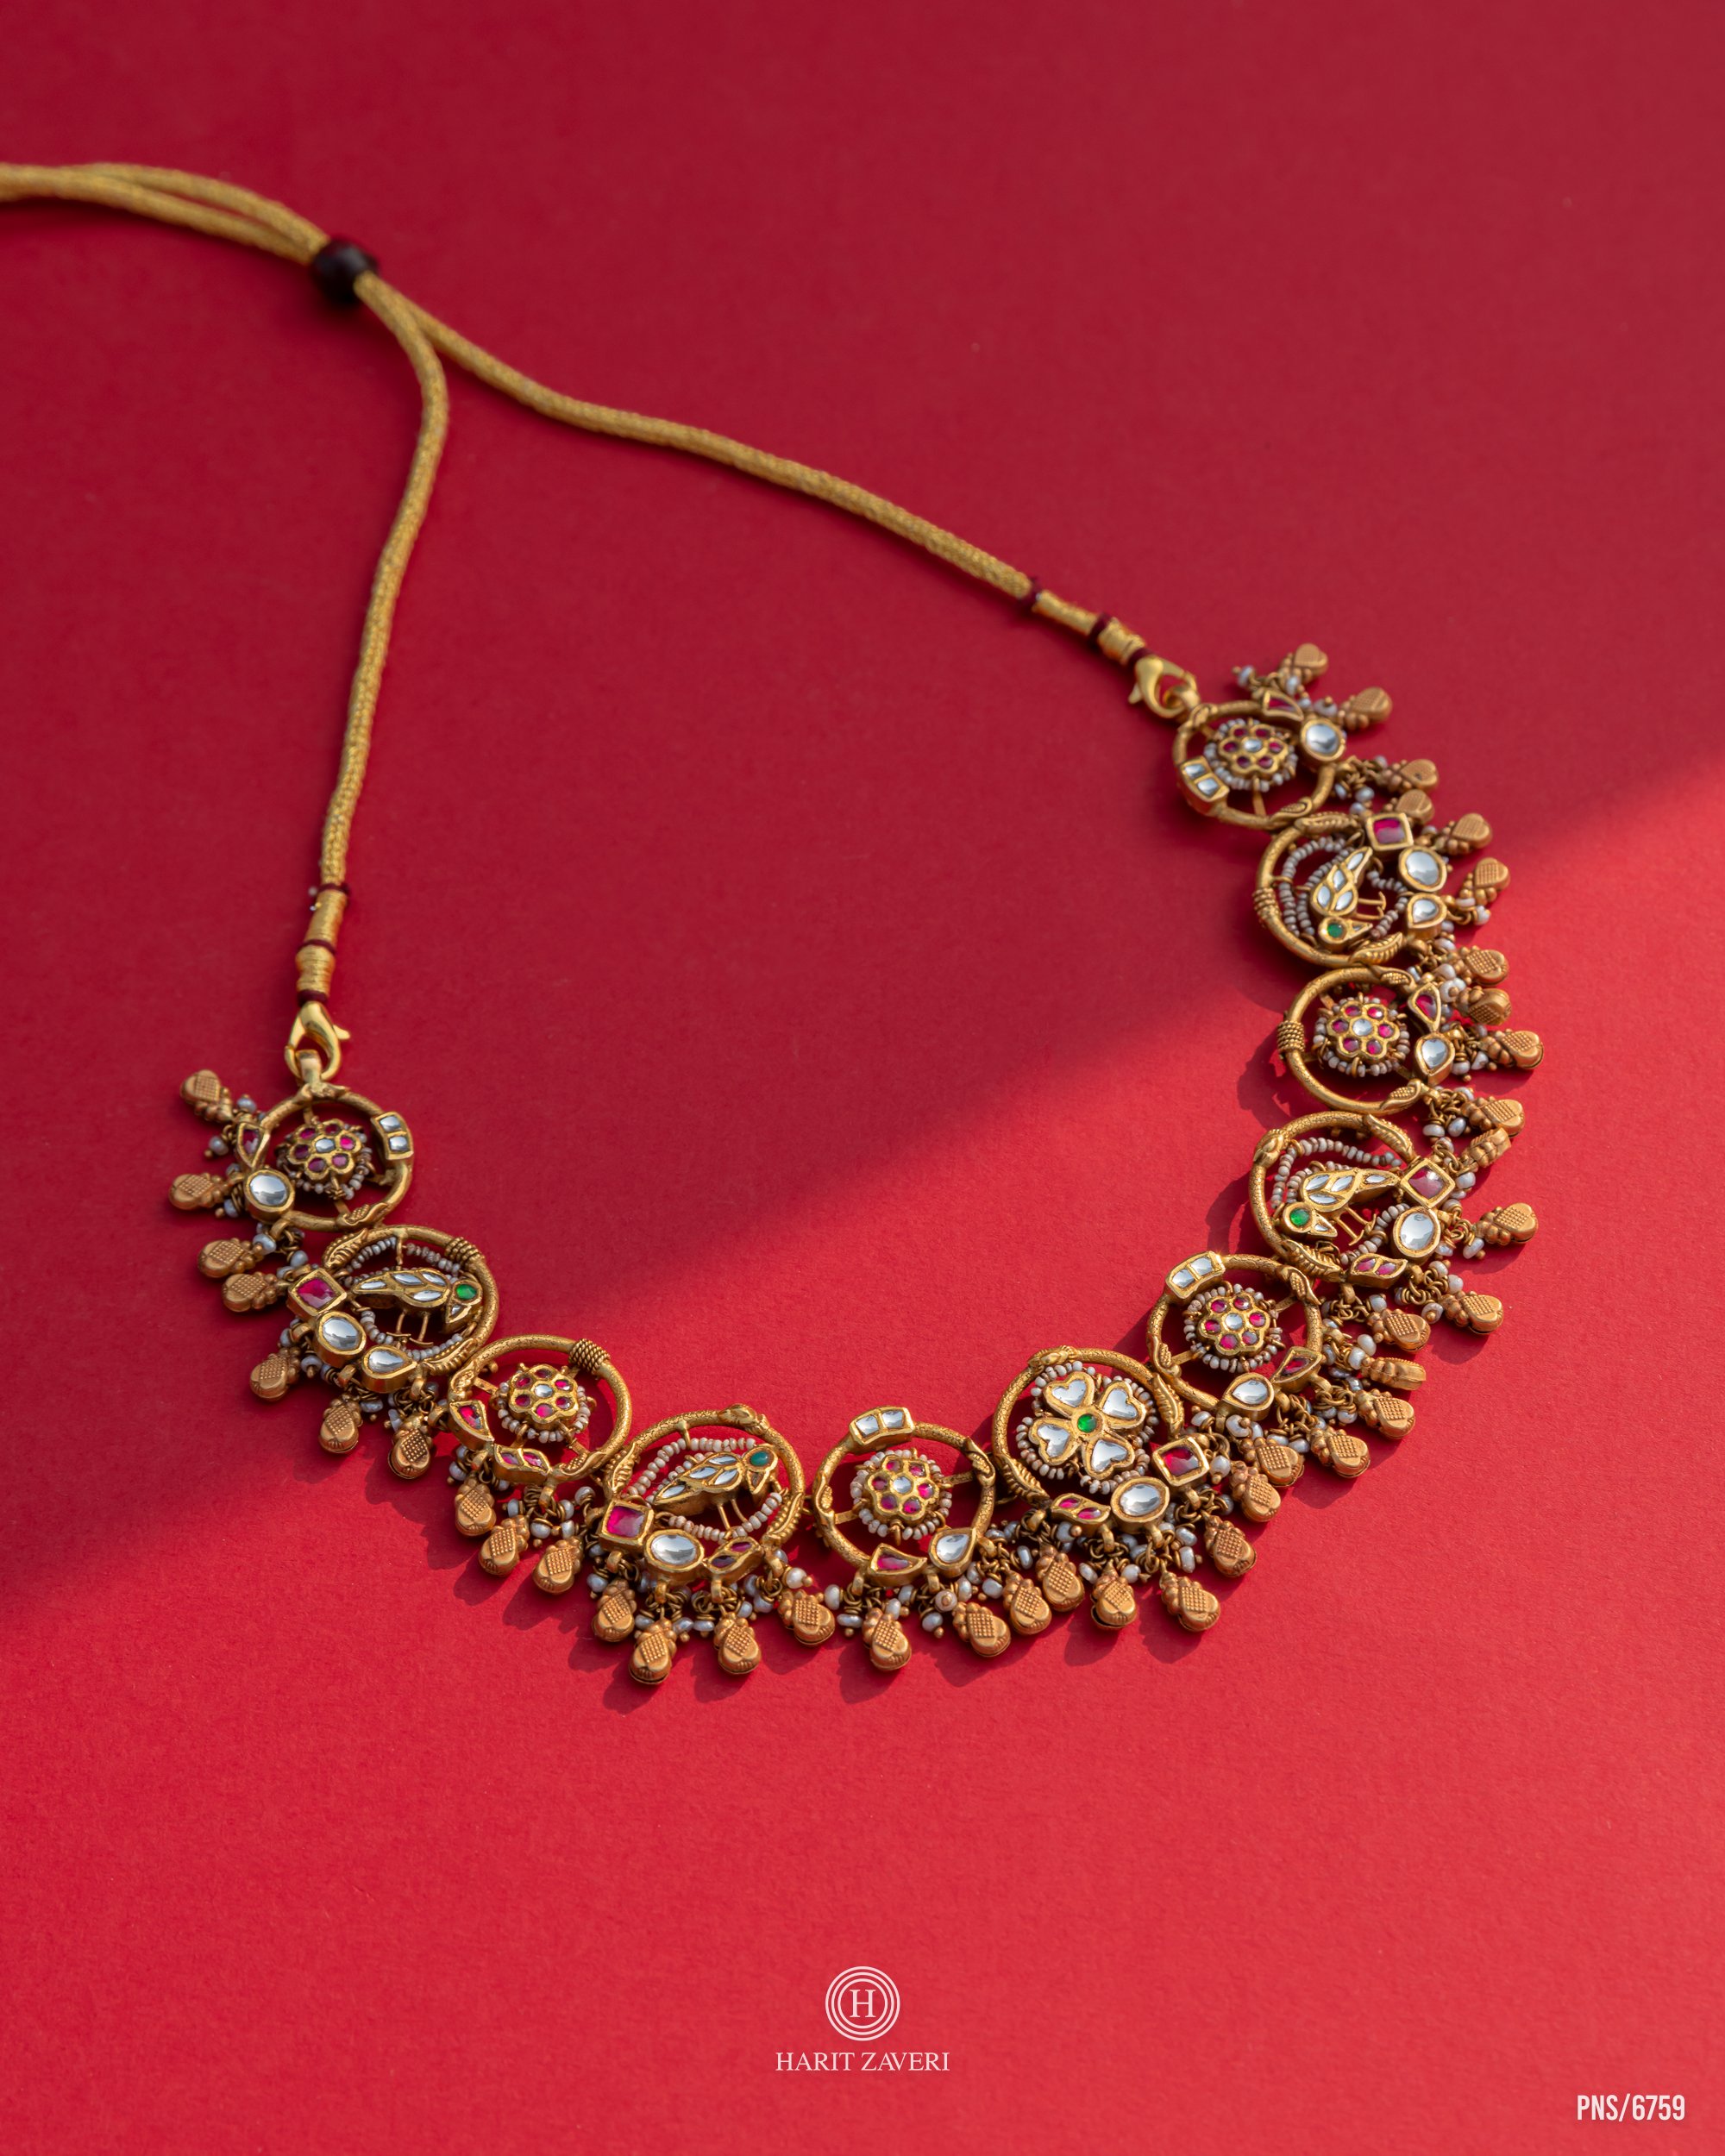 HZJ-Antique-Necklace 1